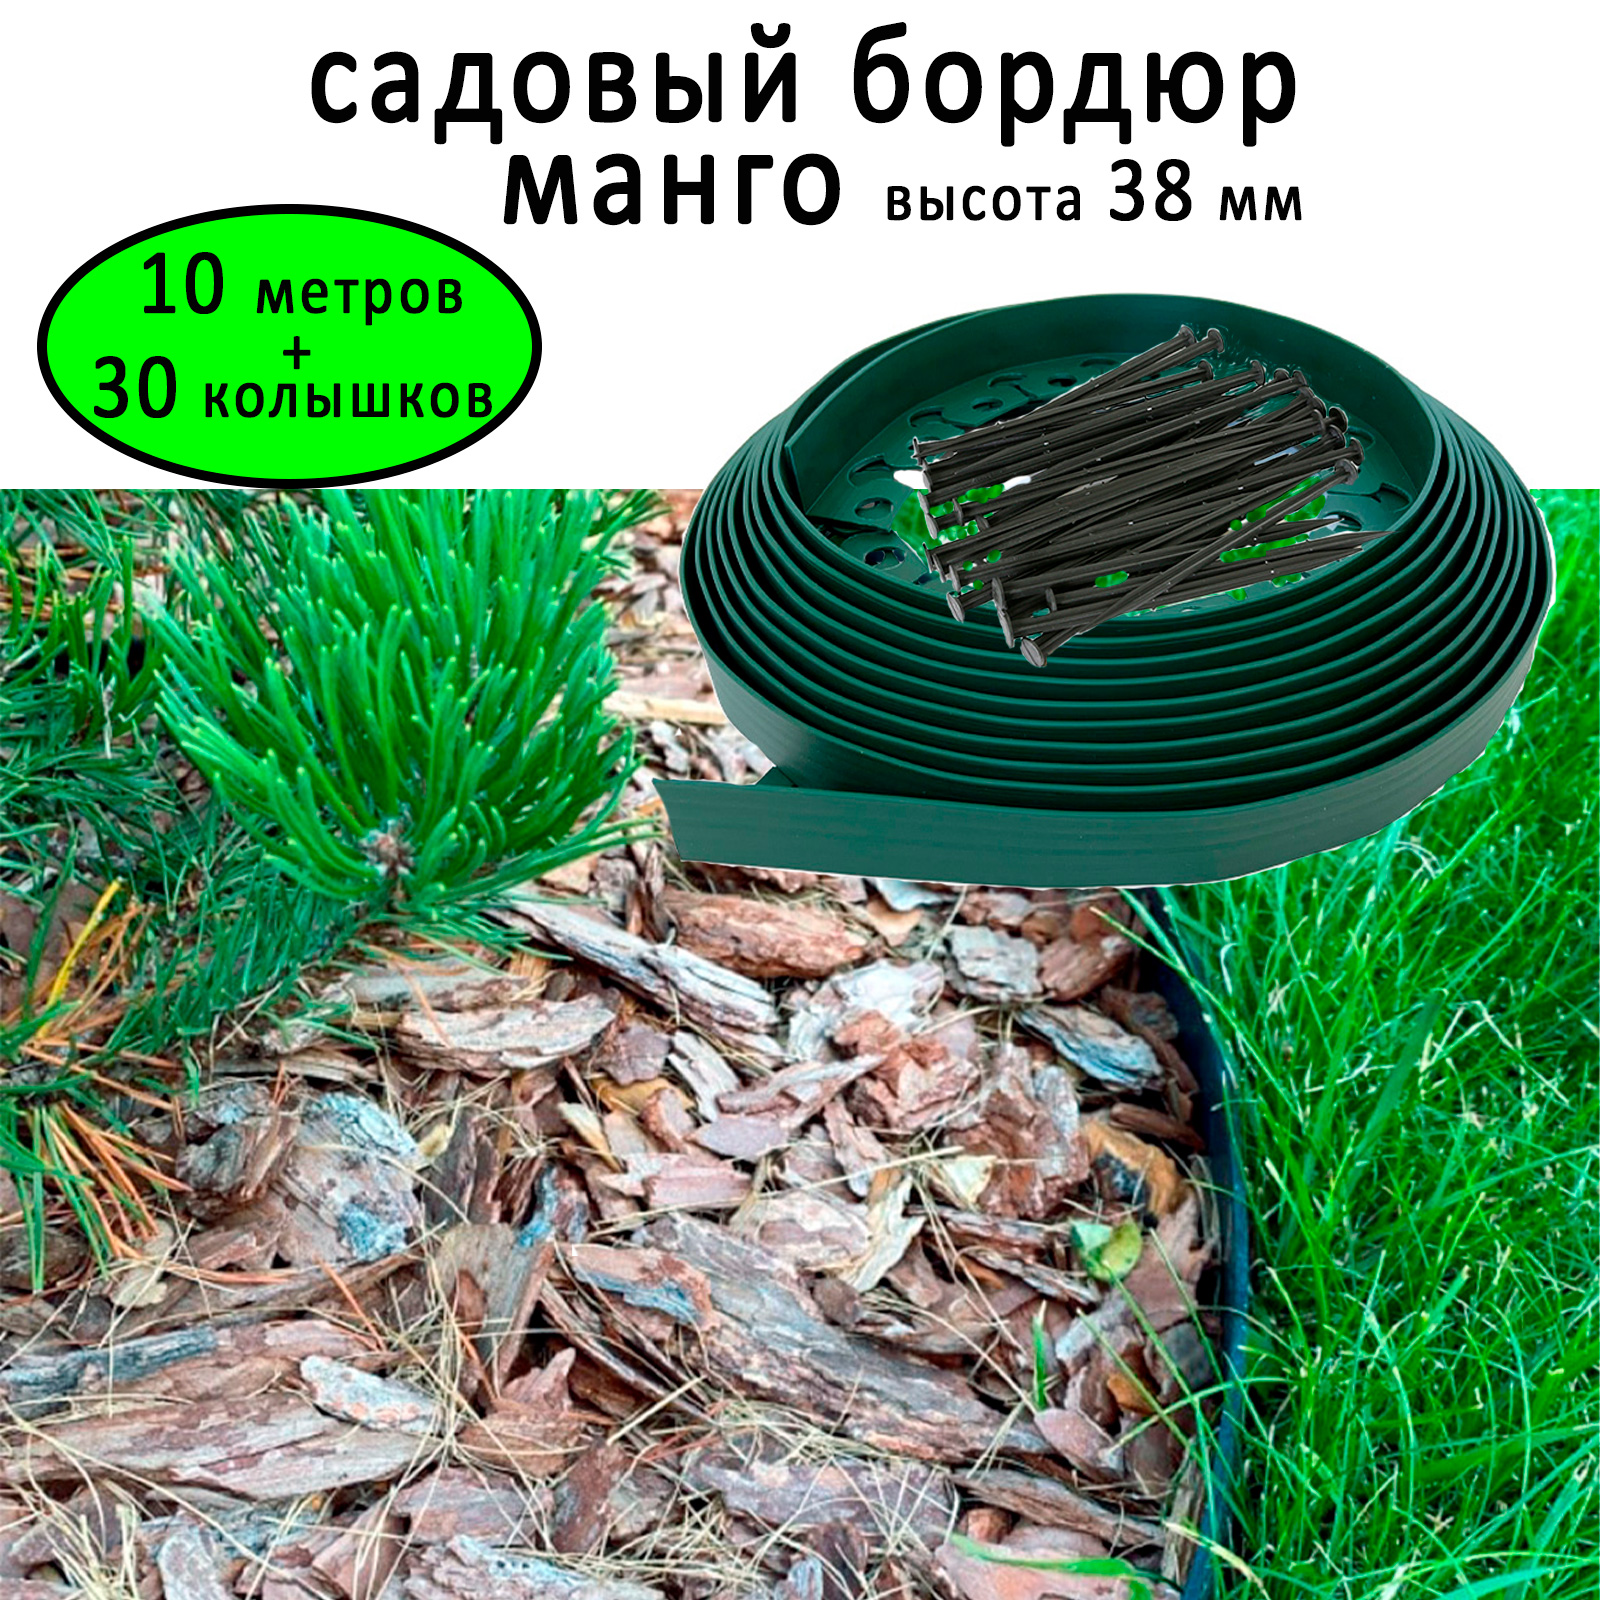 Садовый бордюр ГеоПластБорд пластиковый Манго высота 38 мм, 10 метров + 30 кольев, зелёный